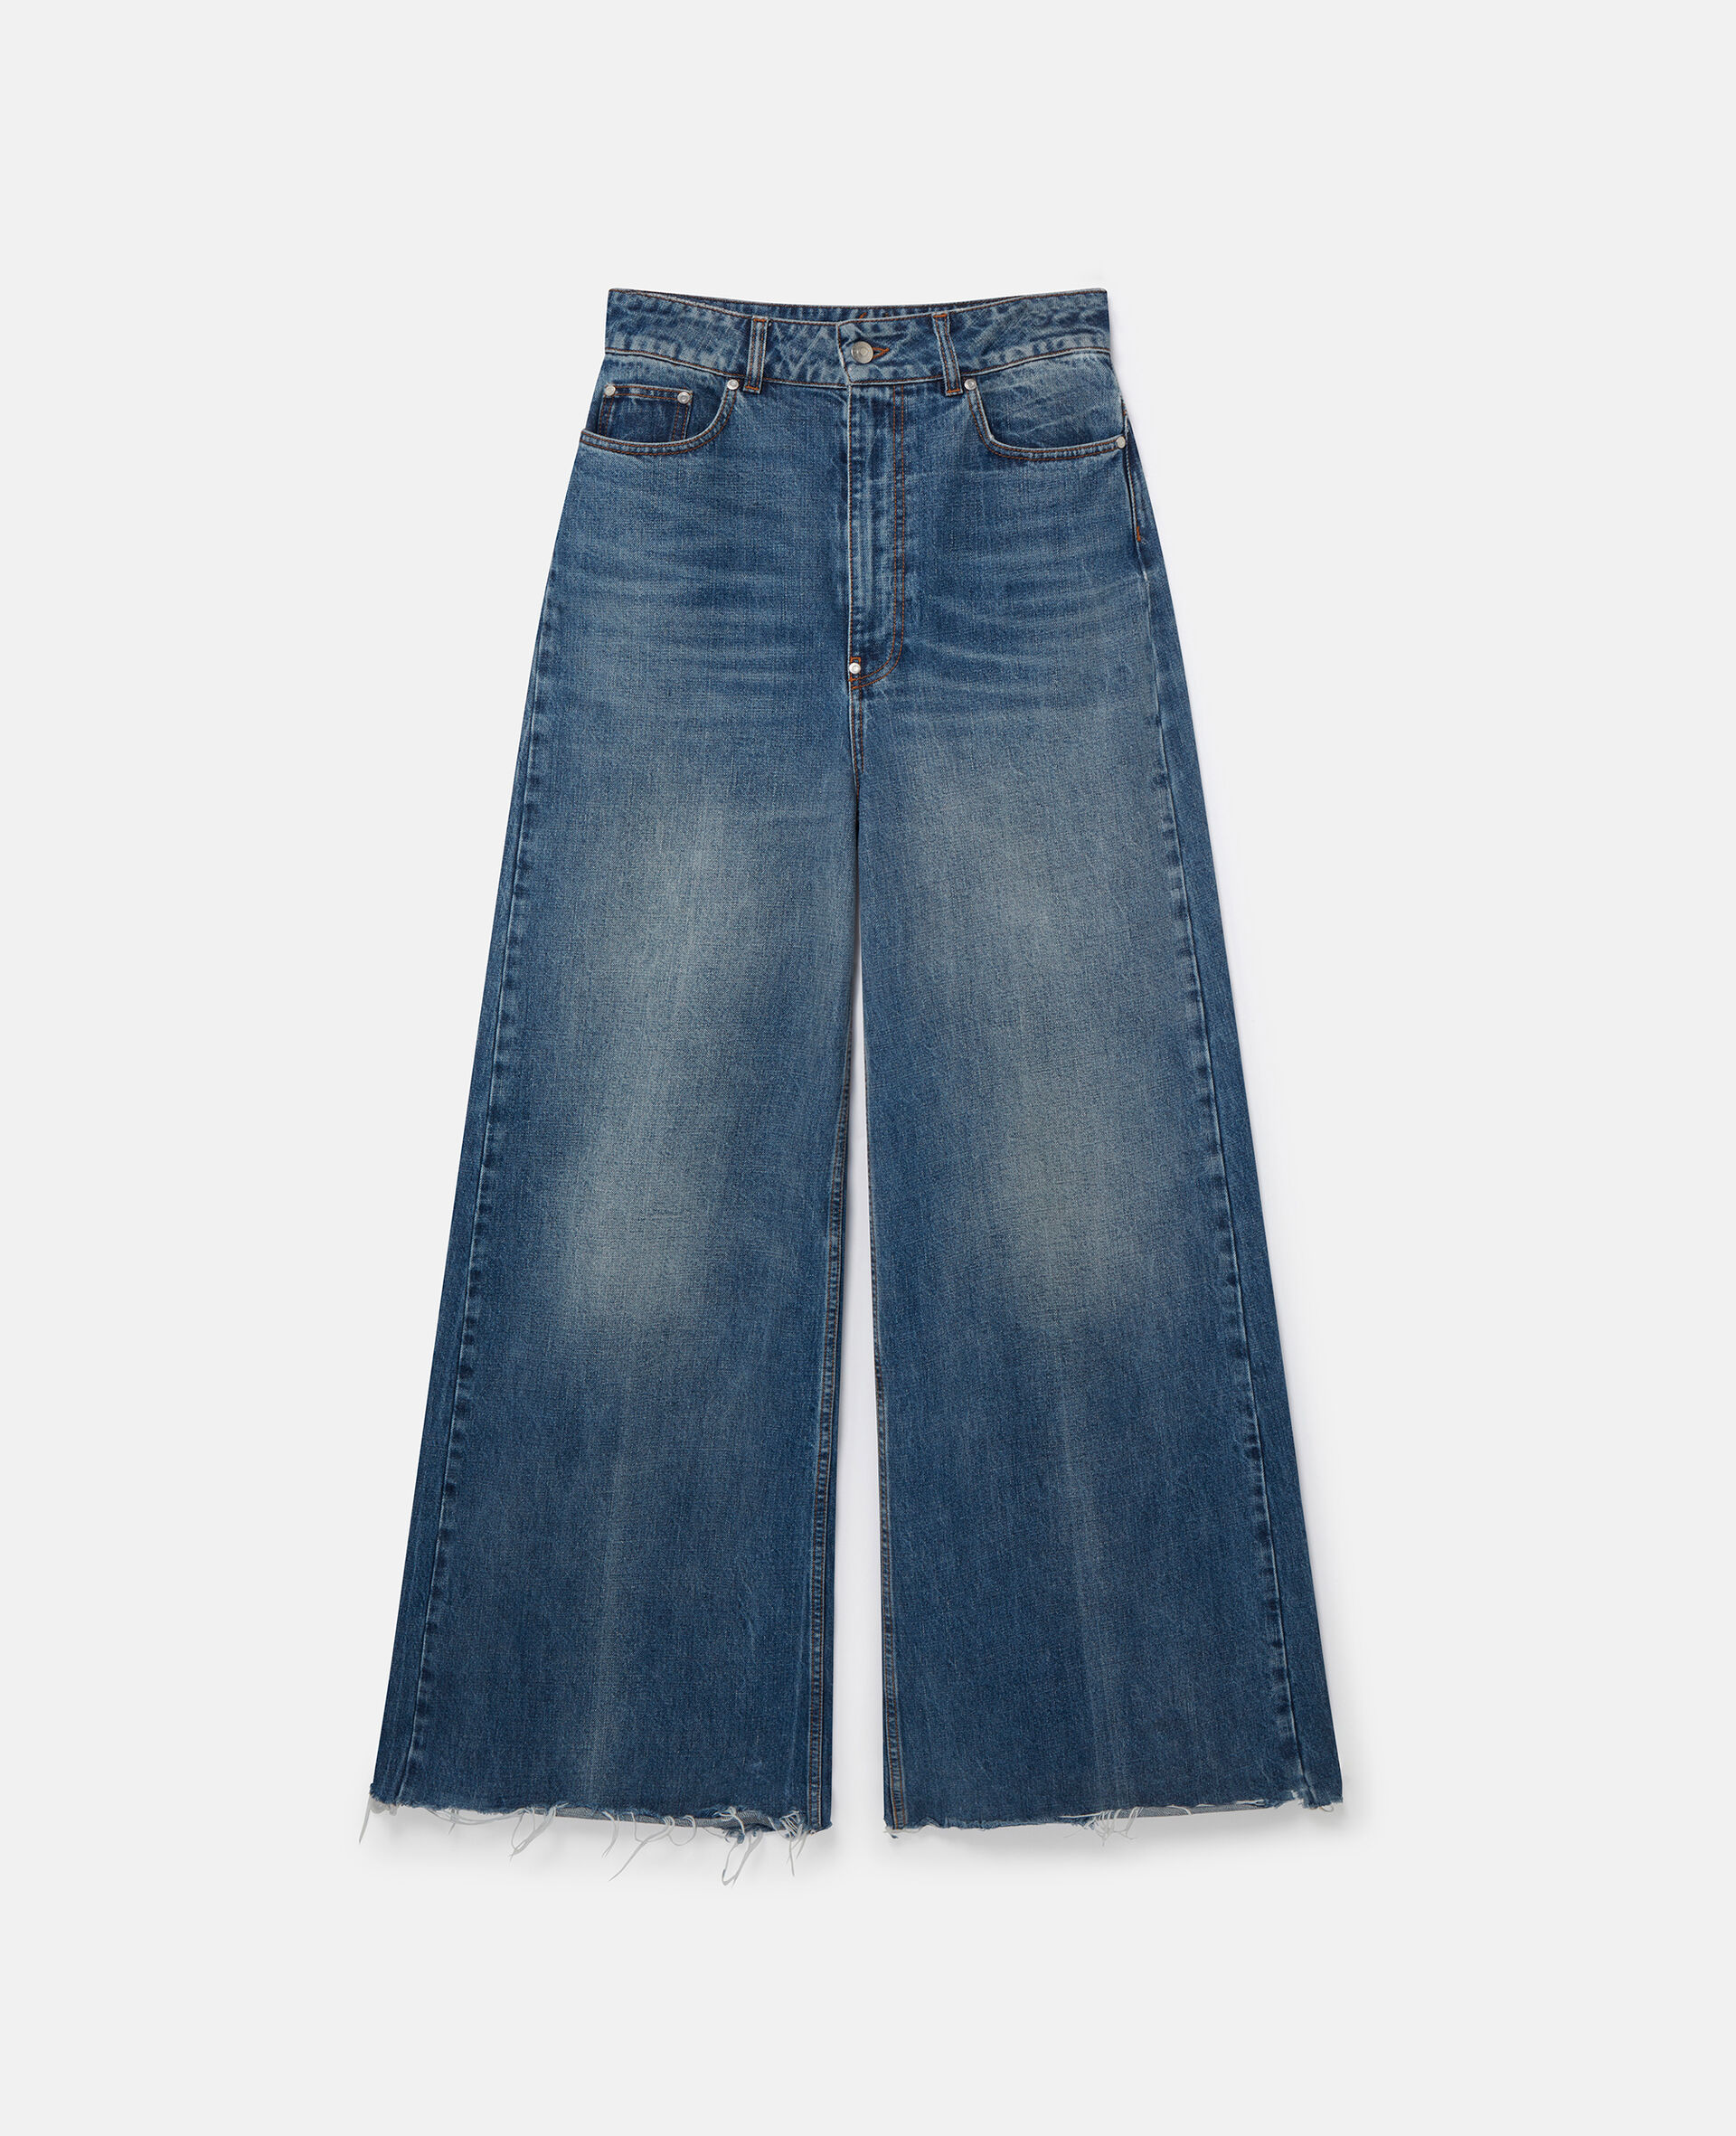 Lockere Jeanshose mit hohem Bund und ausgestelltem Hosenbein-Blau-medium